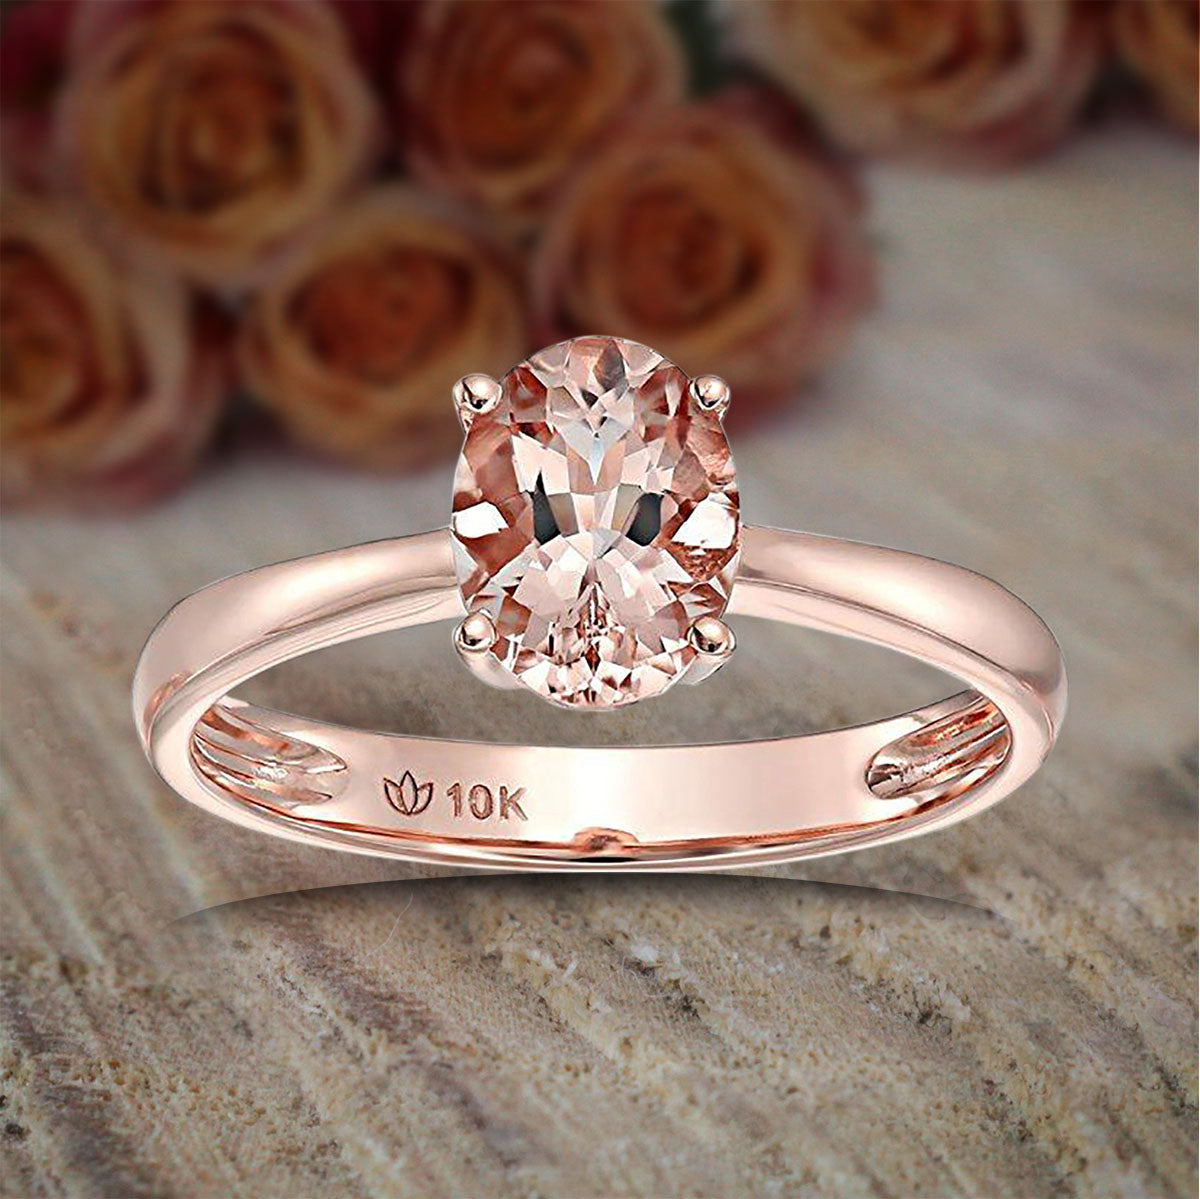 Natural Pink Diamond Wedding Ring 14k Rose Gold Band